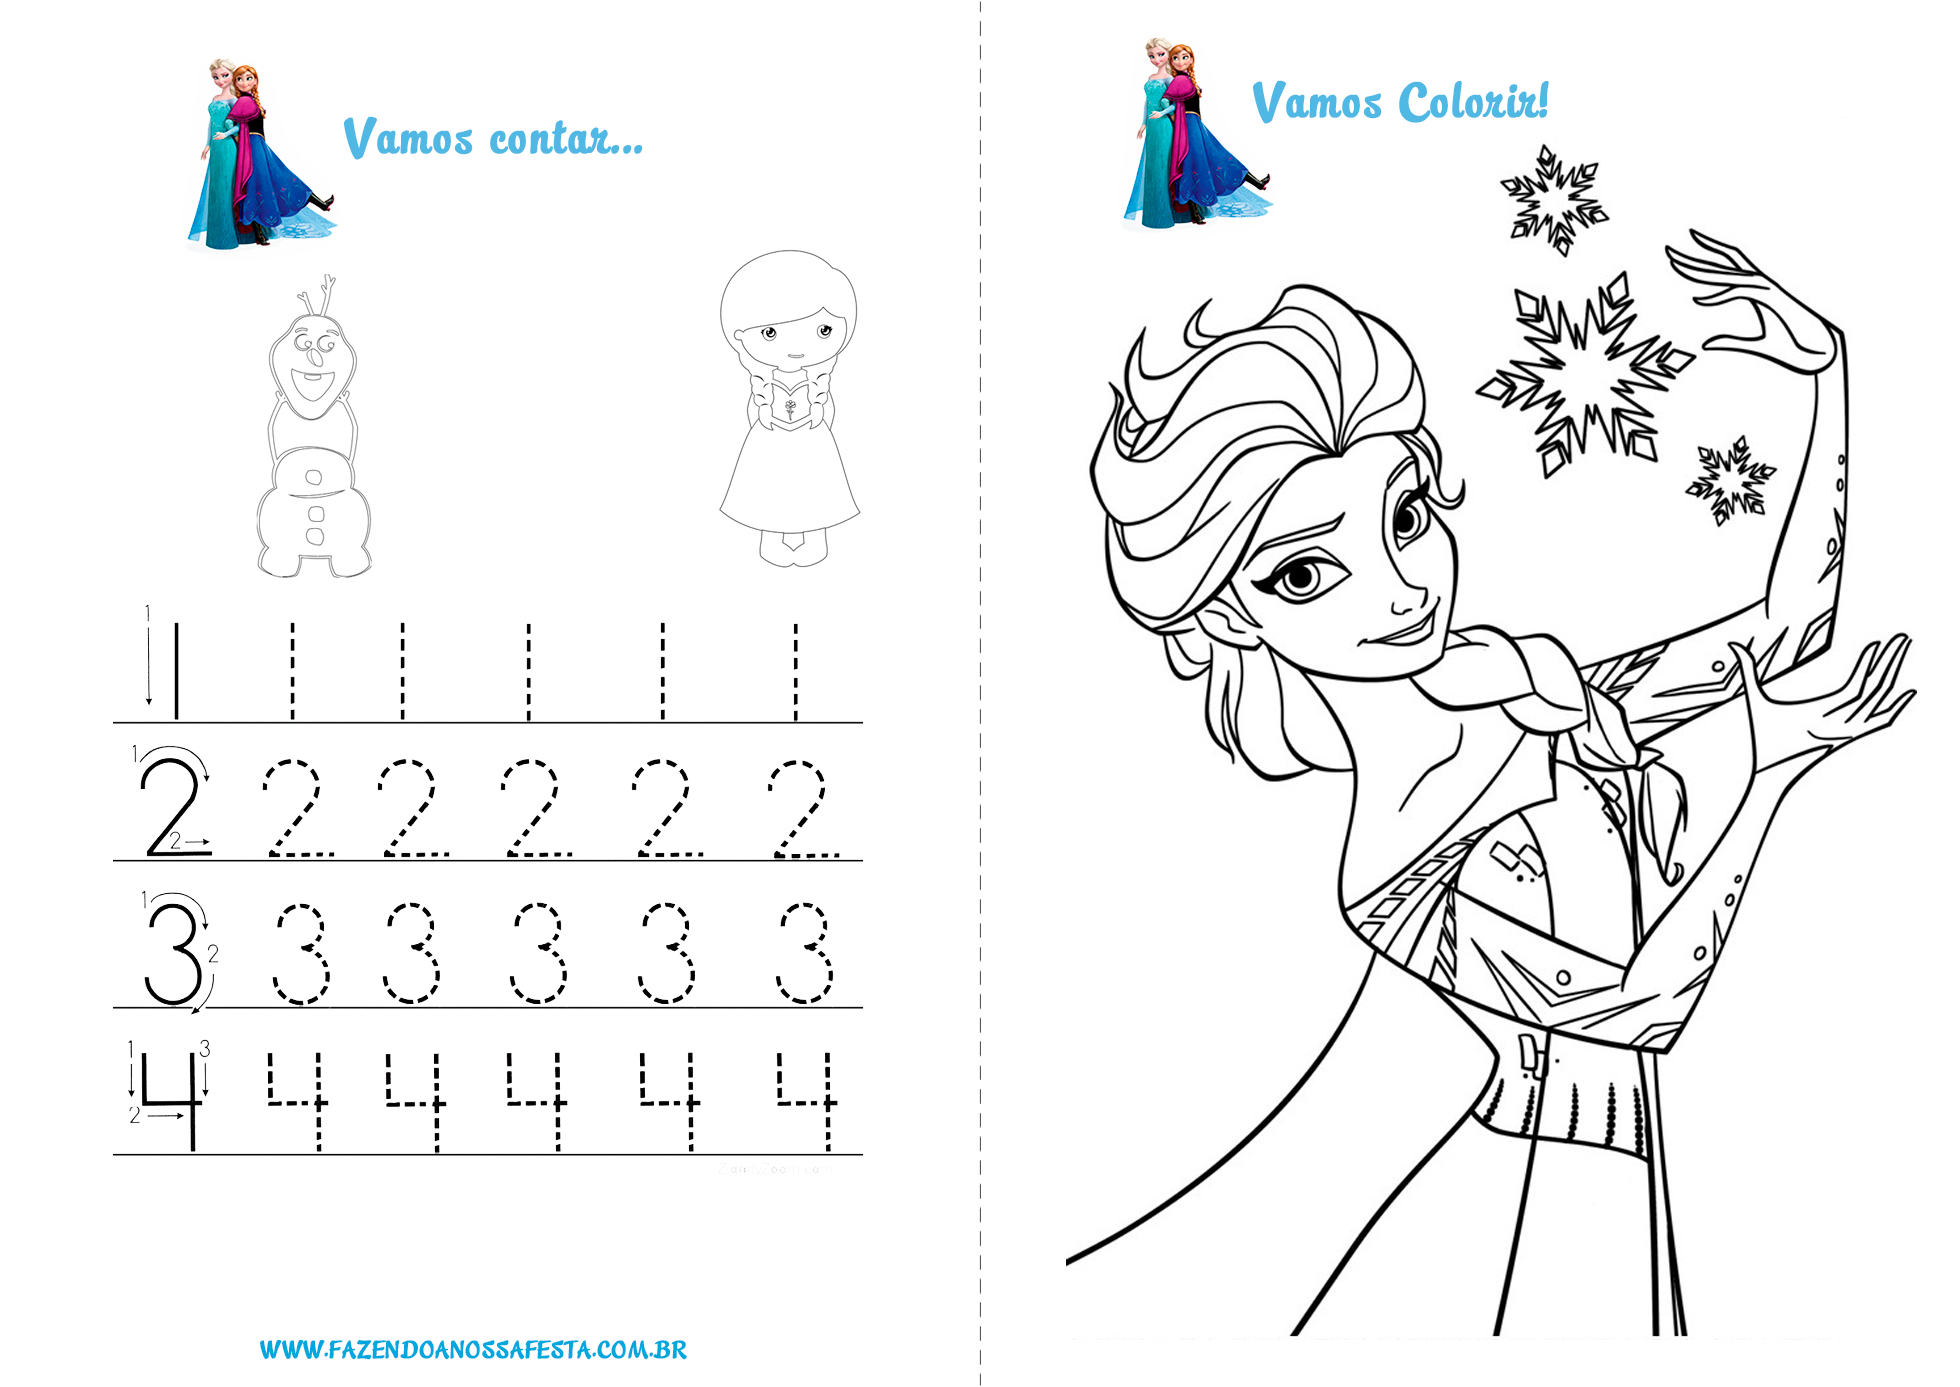 Frozen Almanaque De Atividades Para Colorir - RioMar Aracaju Online